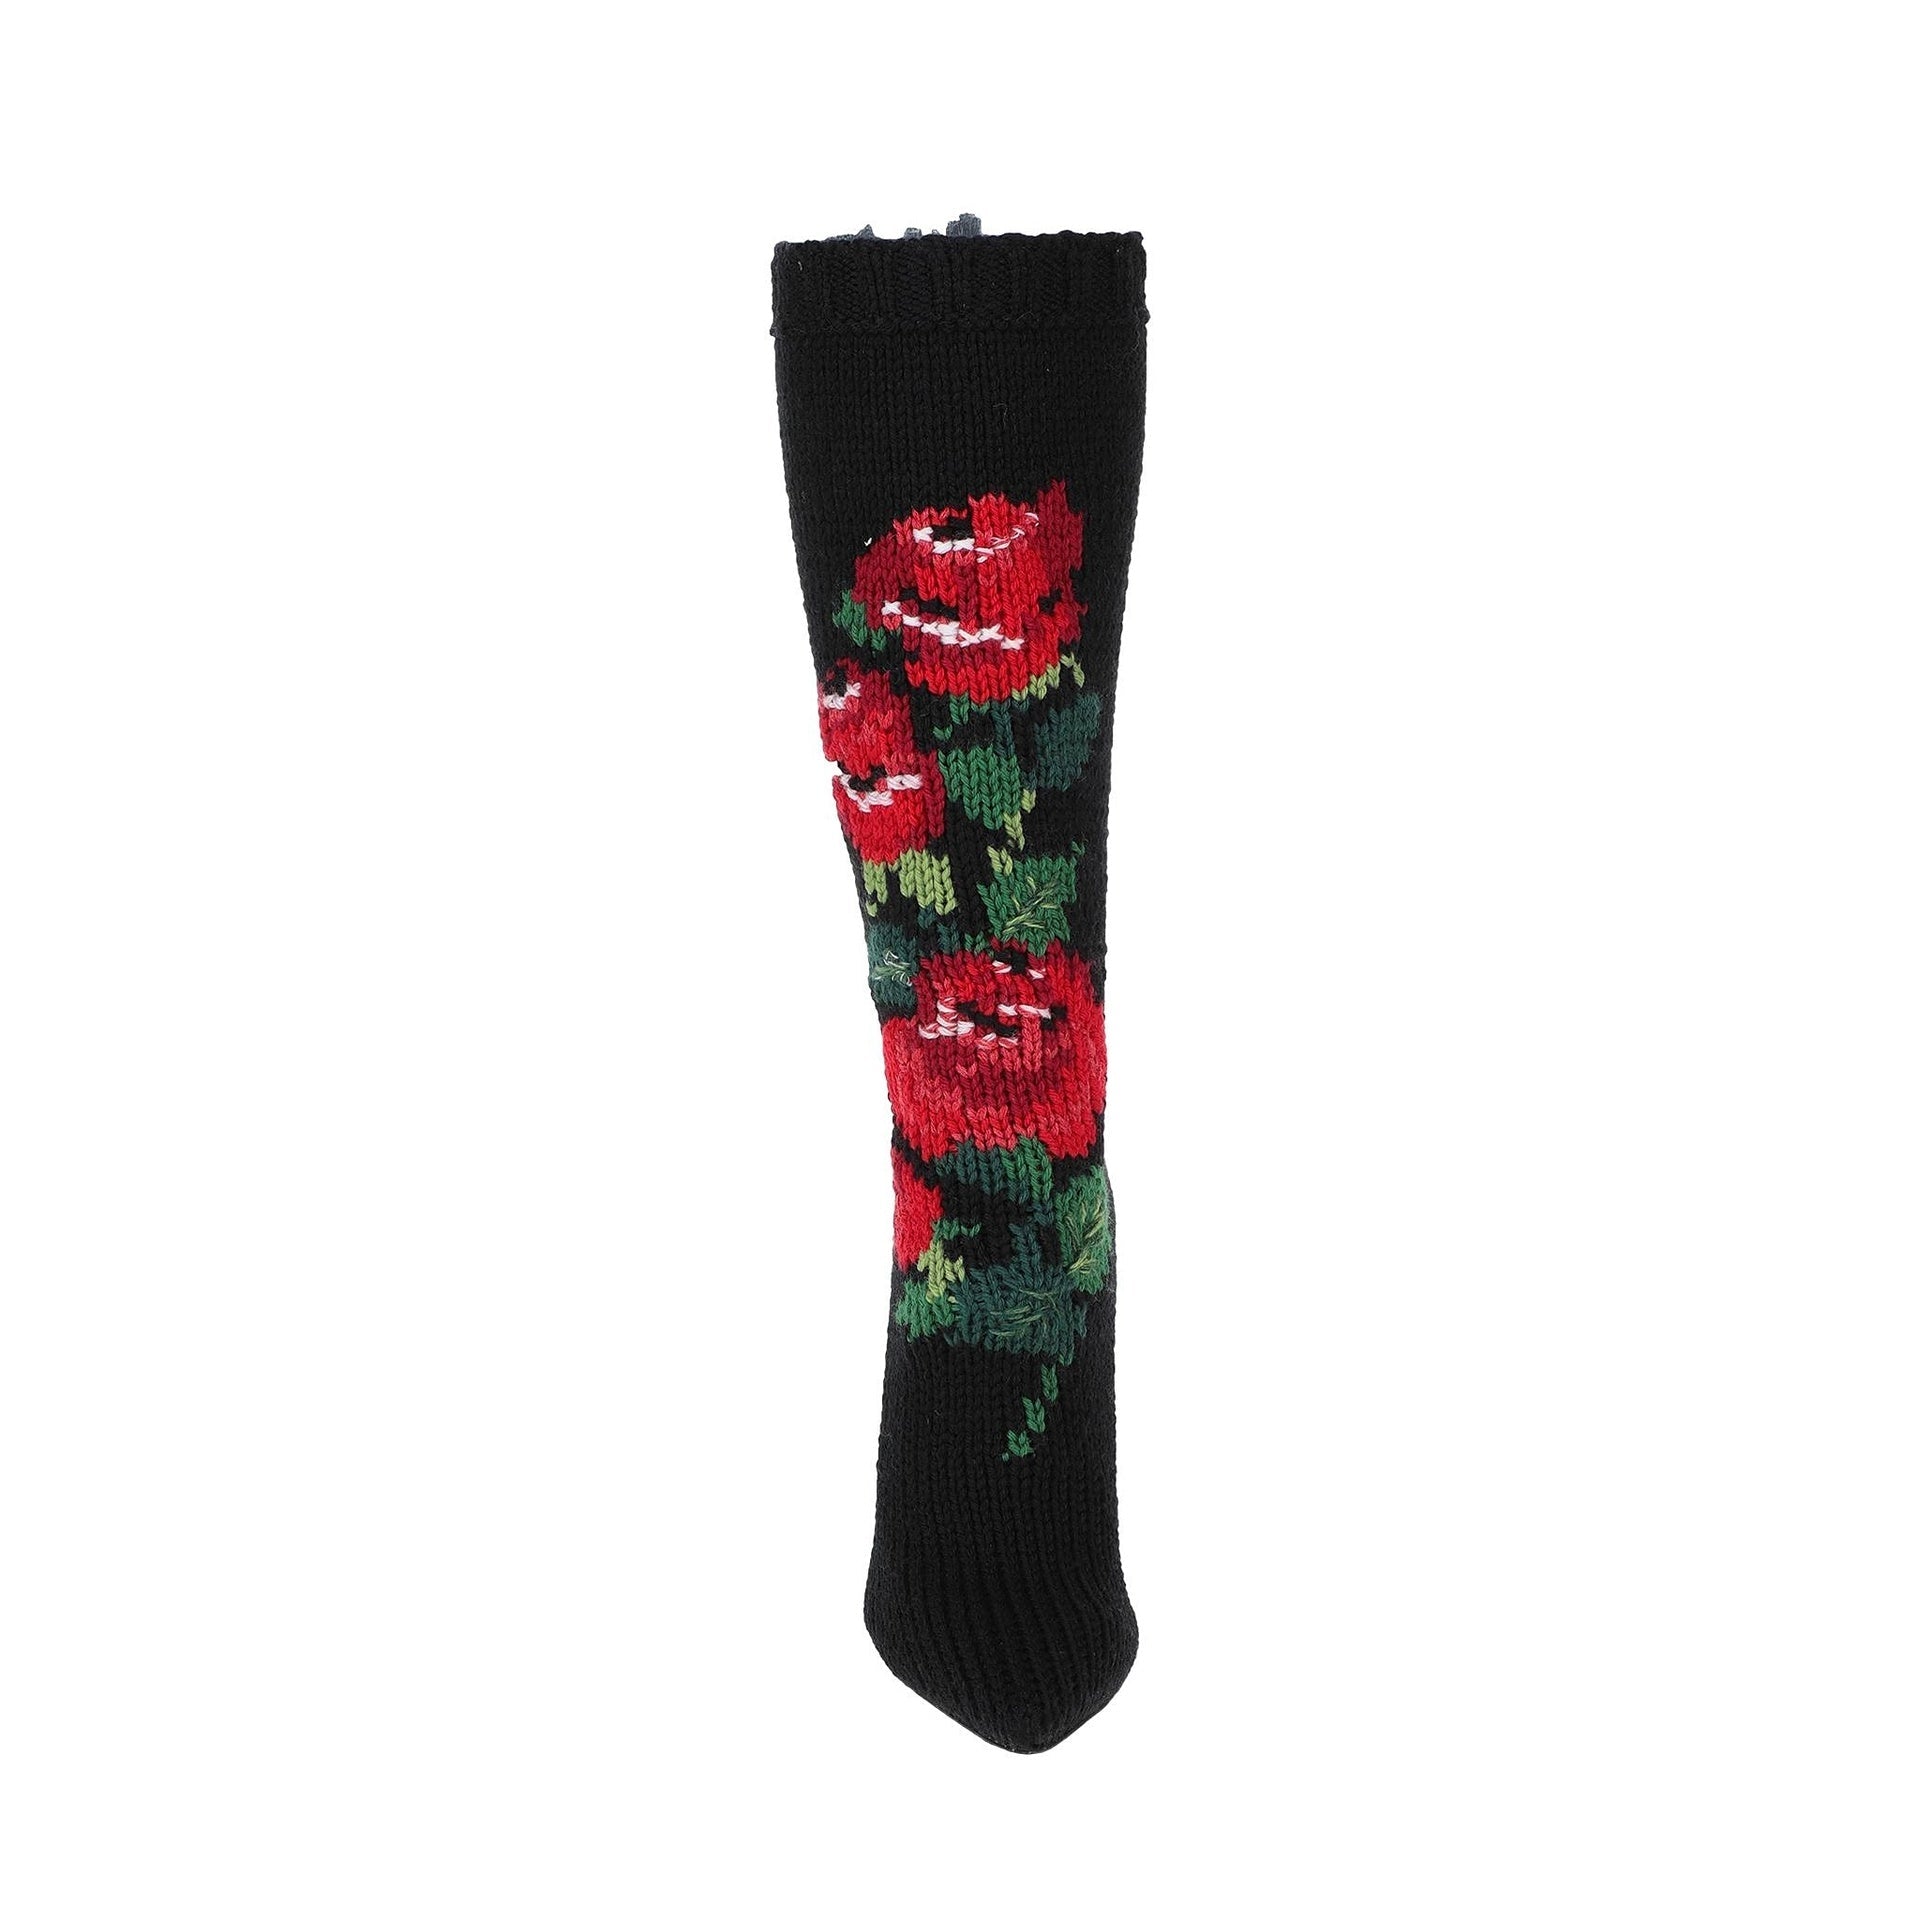 Dolce & Gabbana Wool Flower Boots